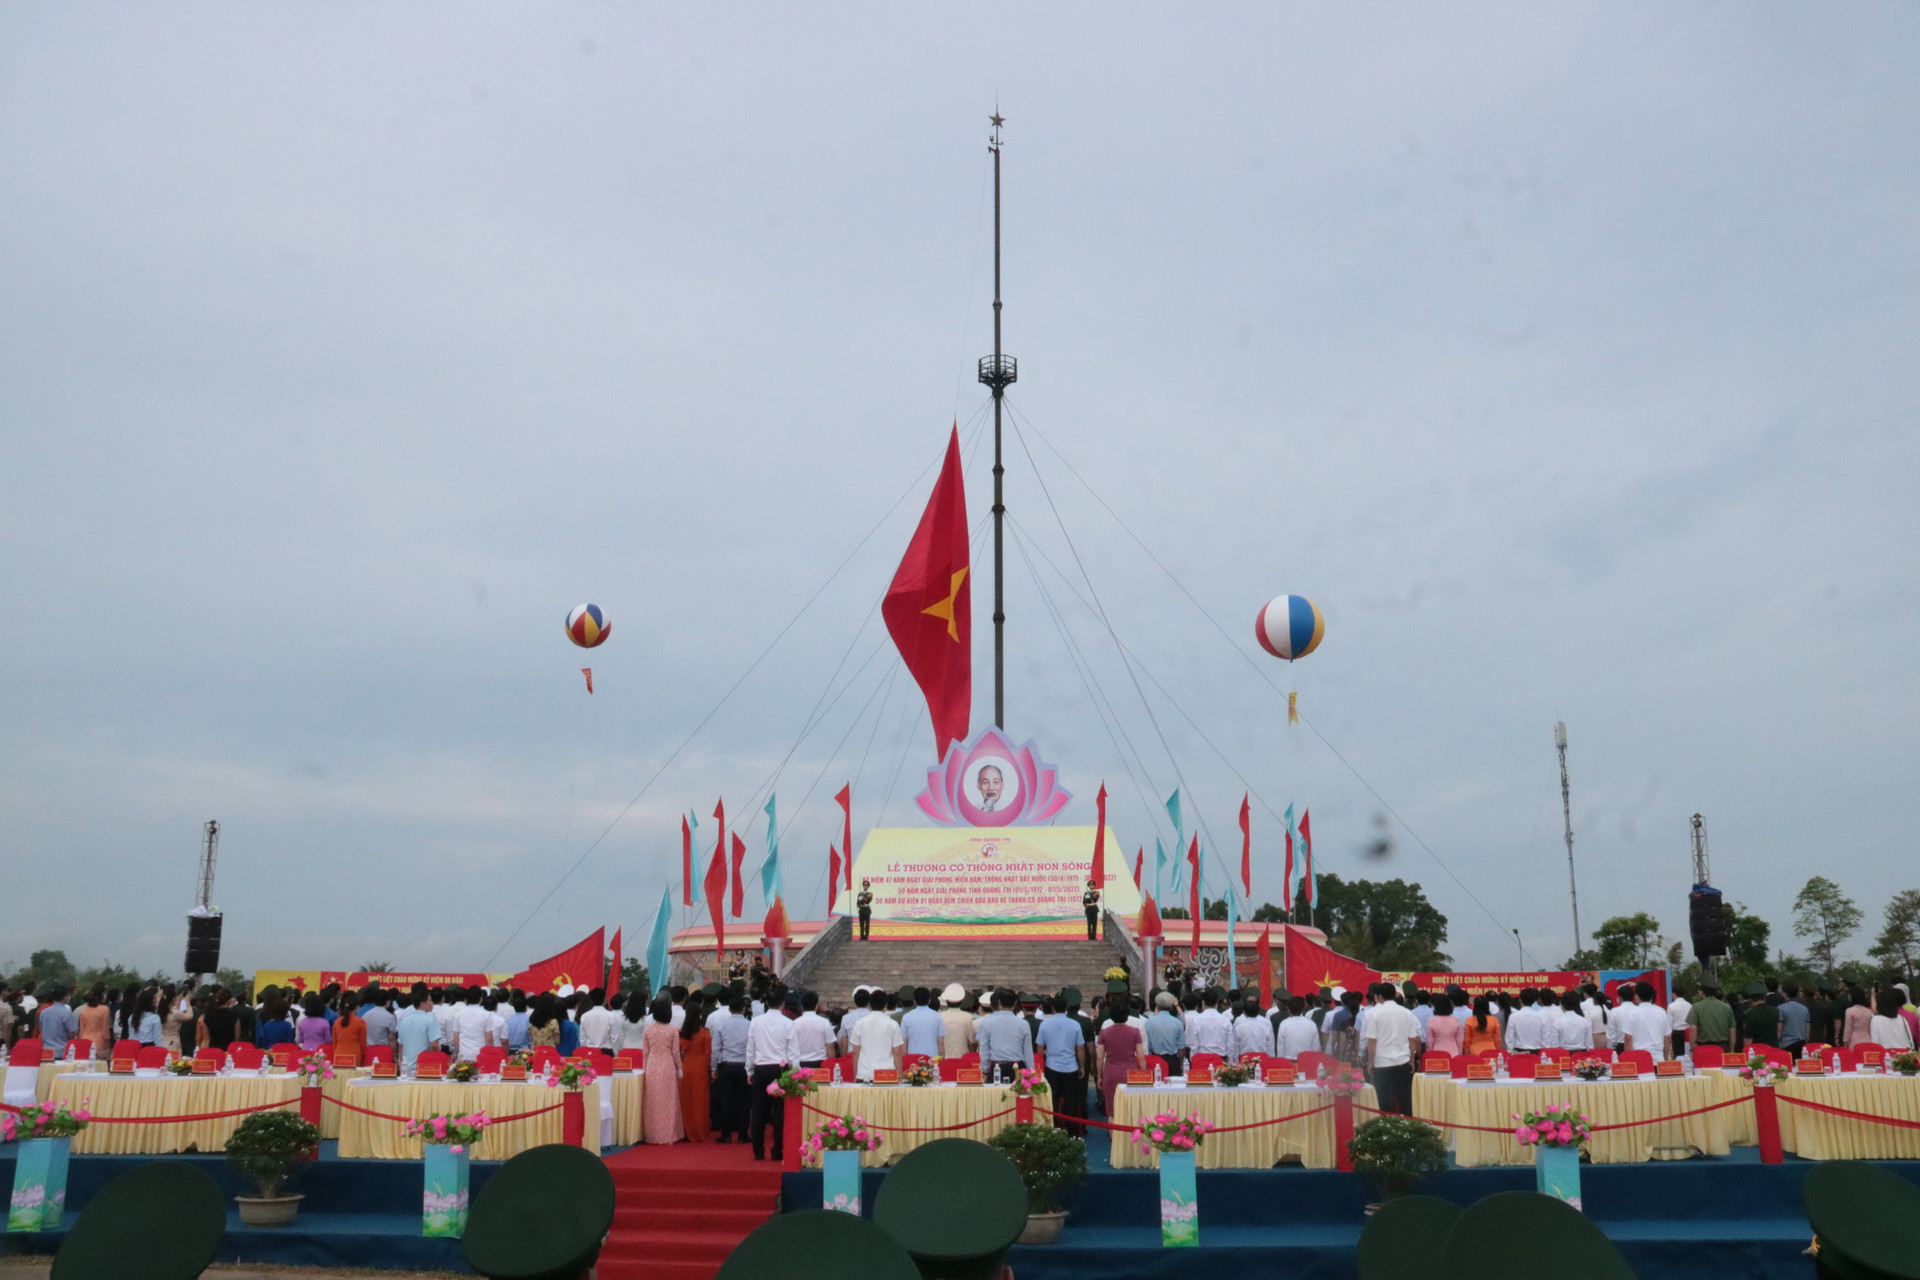 Lễ Thượng cờ “Thống nhất non sông” và diễu binh, diễu hành là một trong những hoạt động trong chương trình kỷ niệm 50 năm ngày giải phóng tỉnh Quảng Trị (1/5/1972 – 1/5/2022) và 50 năm sự kiện 81 ngày đêm chiến đấu bảo vệ Thành cổ Quảng Trị.